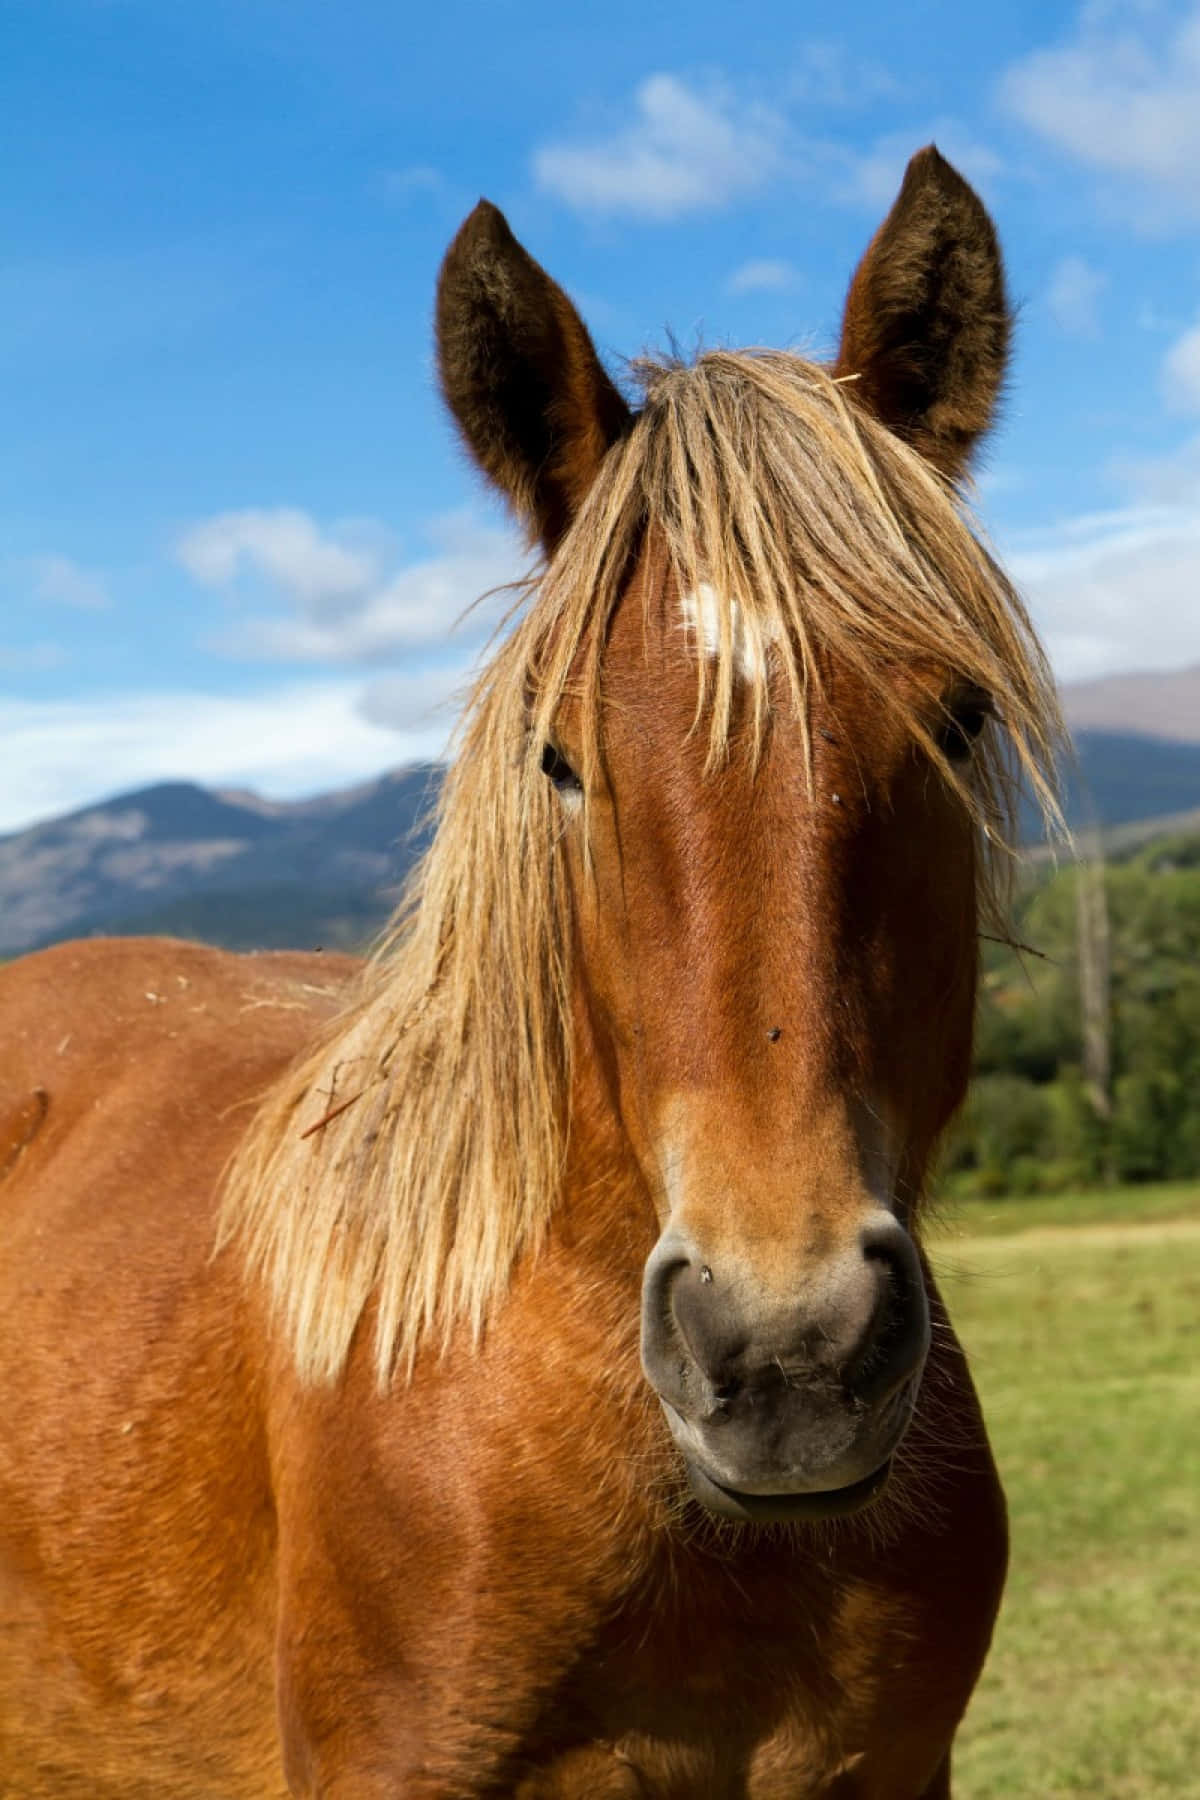 Enmajestætisk Brun Pony Står Fredeligt I En Græseng.